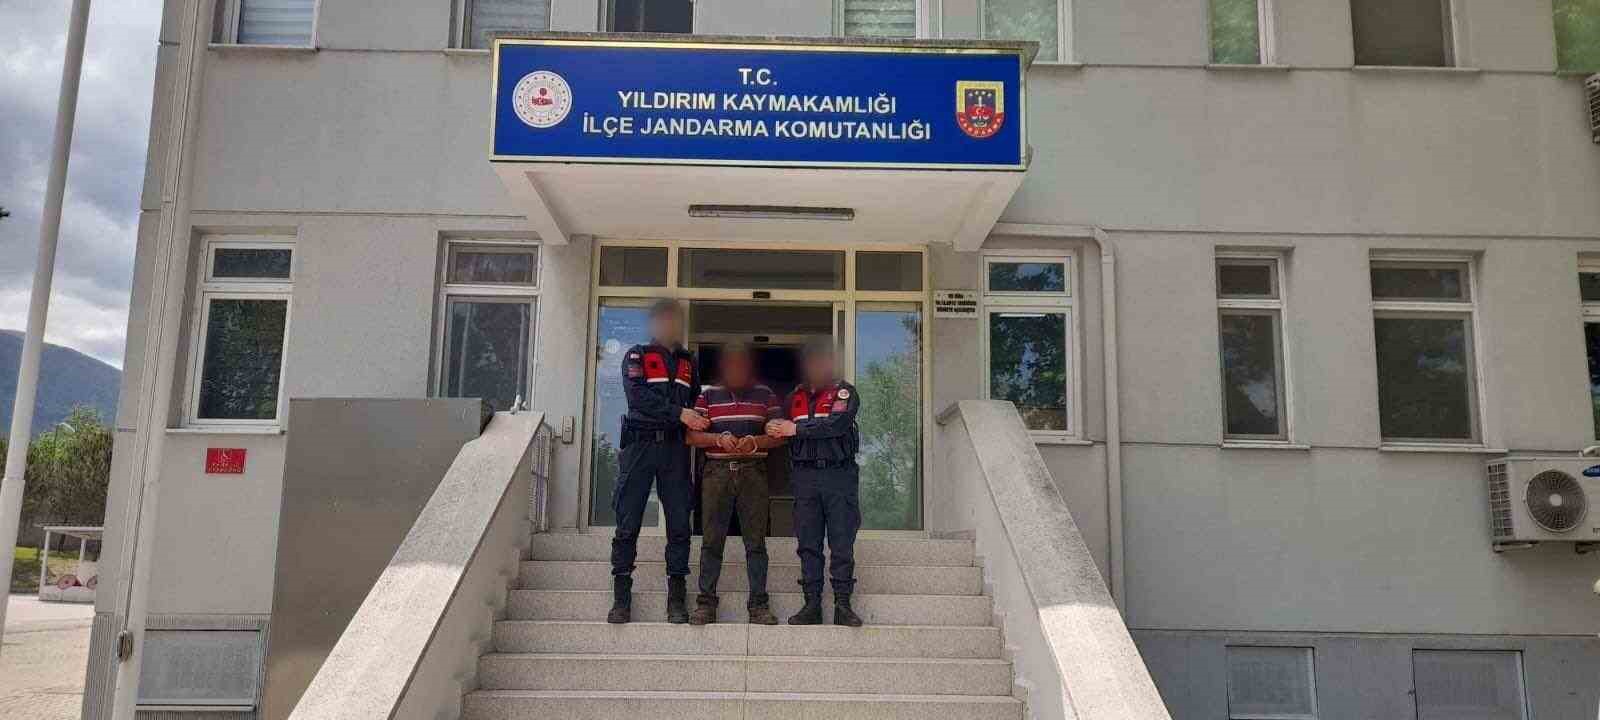 Bursada 65 Adet Suç Kaydı Bulunan Şahıs Yakalandı